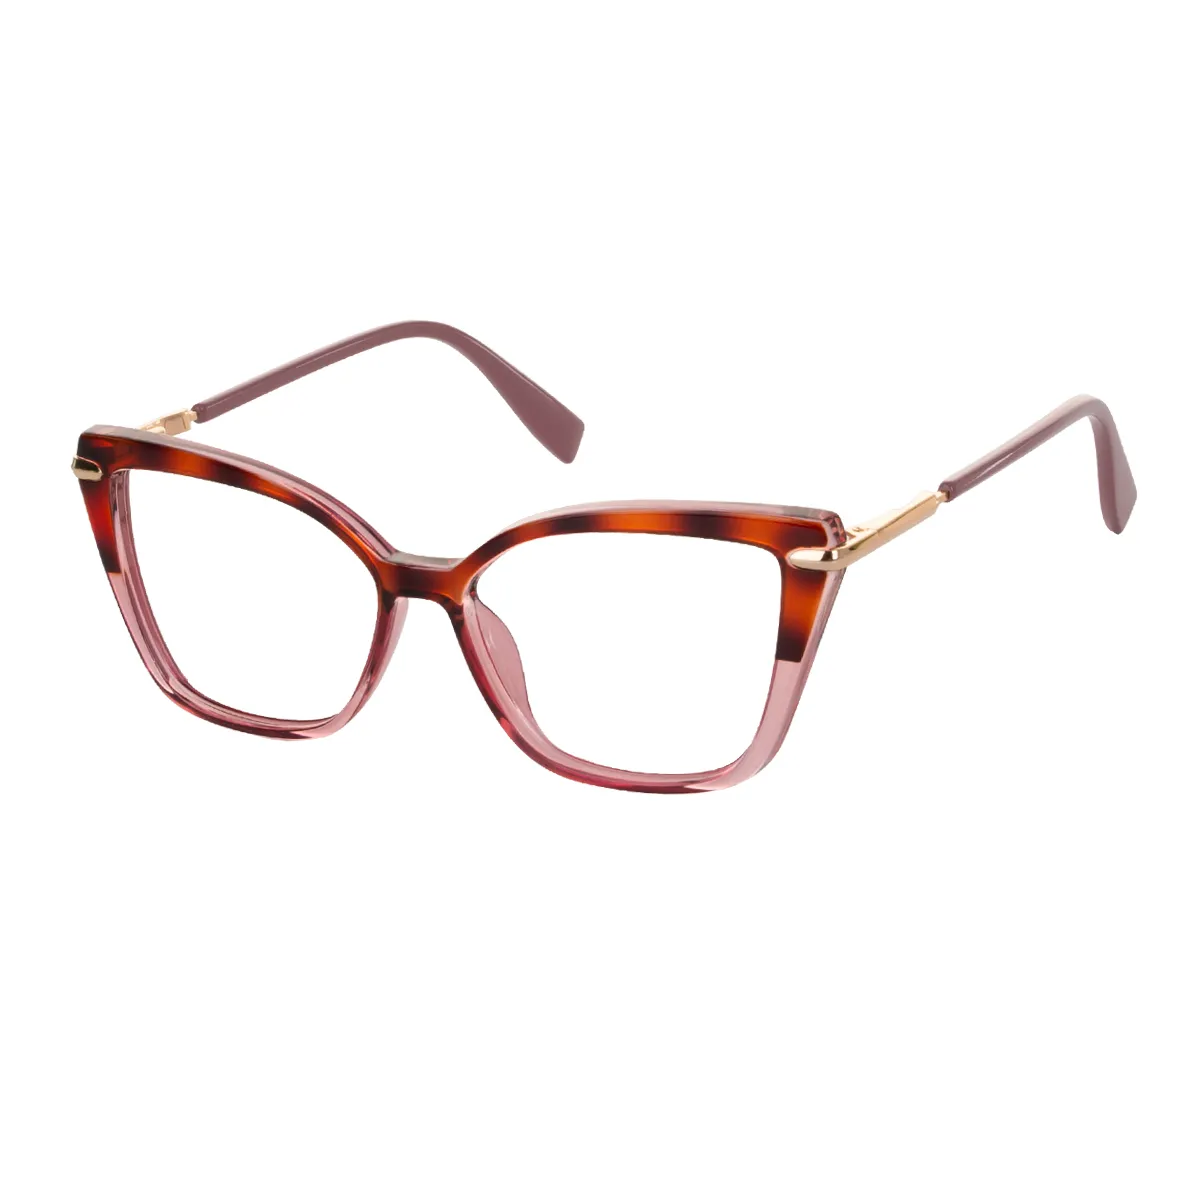 Chat - Cat-eye Pink Tortoiseshell Glasses for Women - EFE